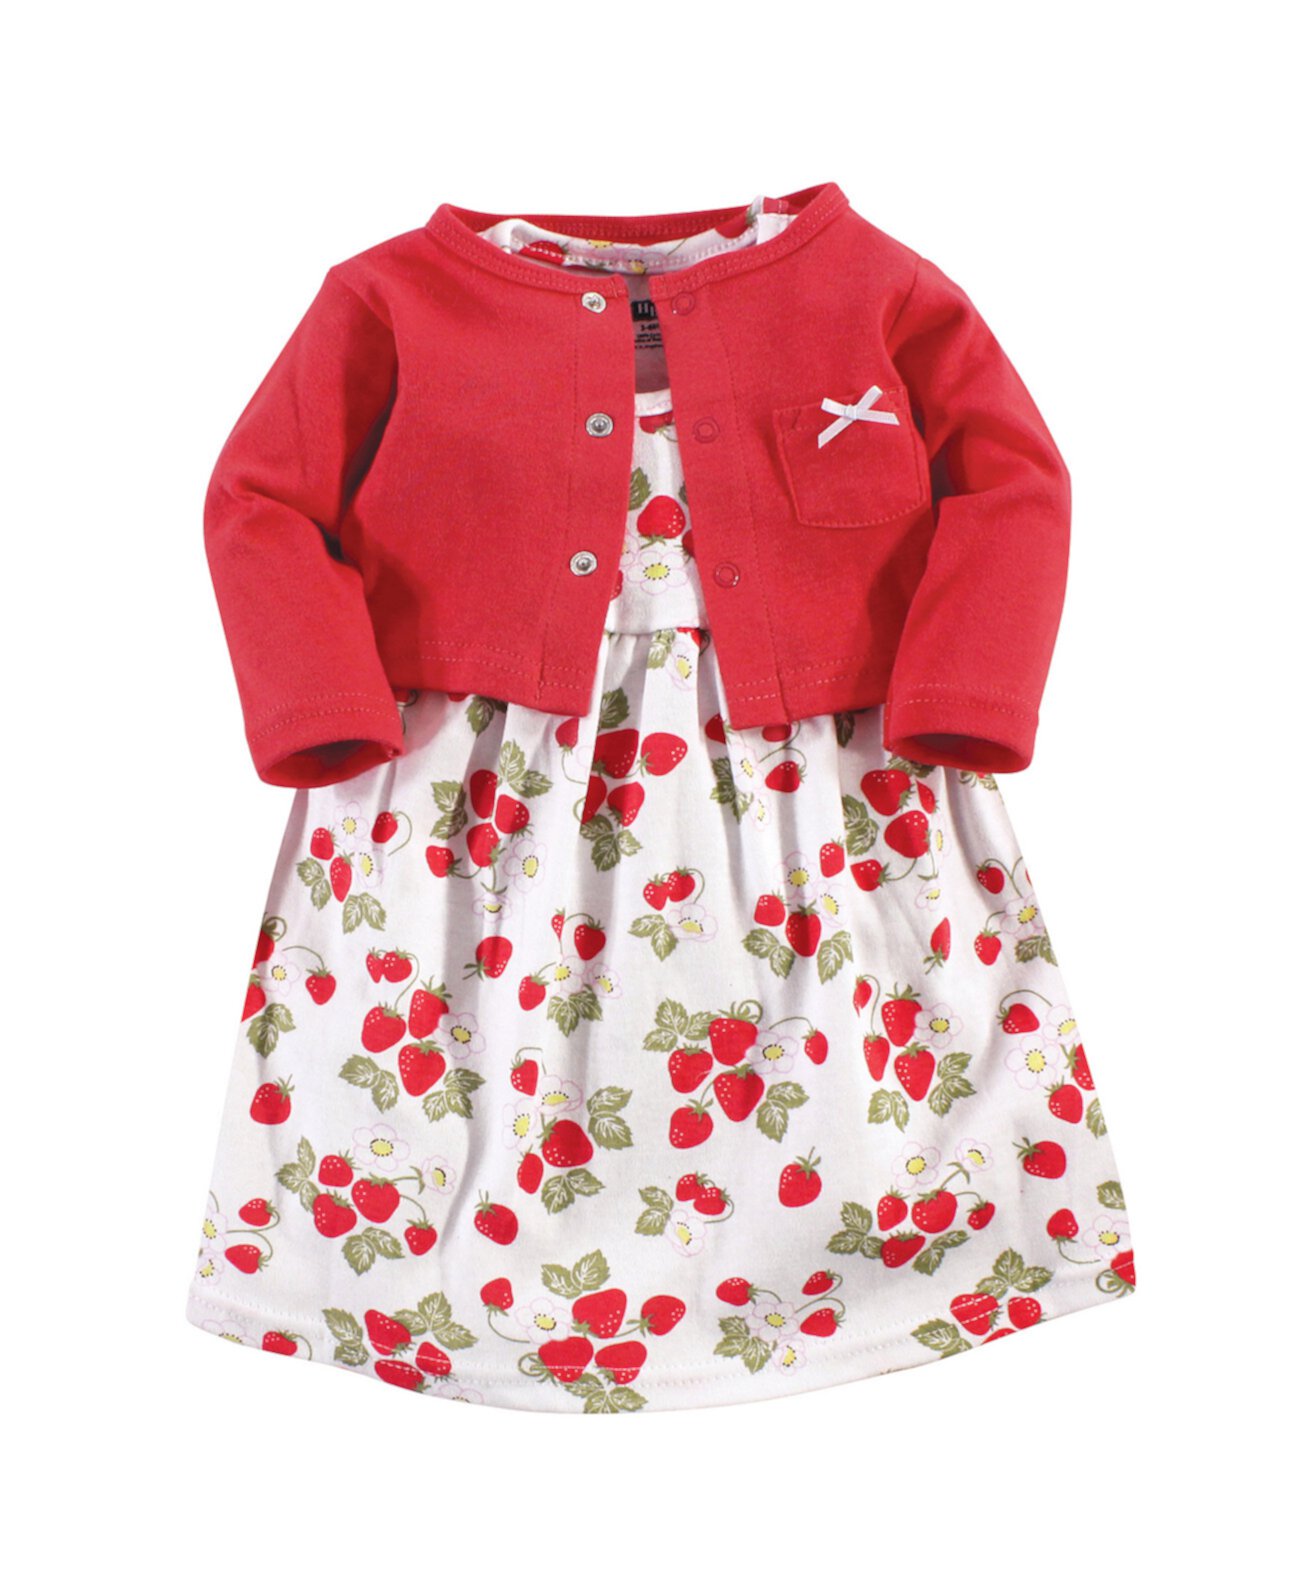 Комплект платья и кардигана, 0-24 месяца Hudson Baby